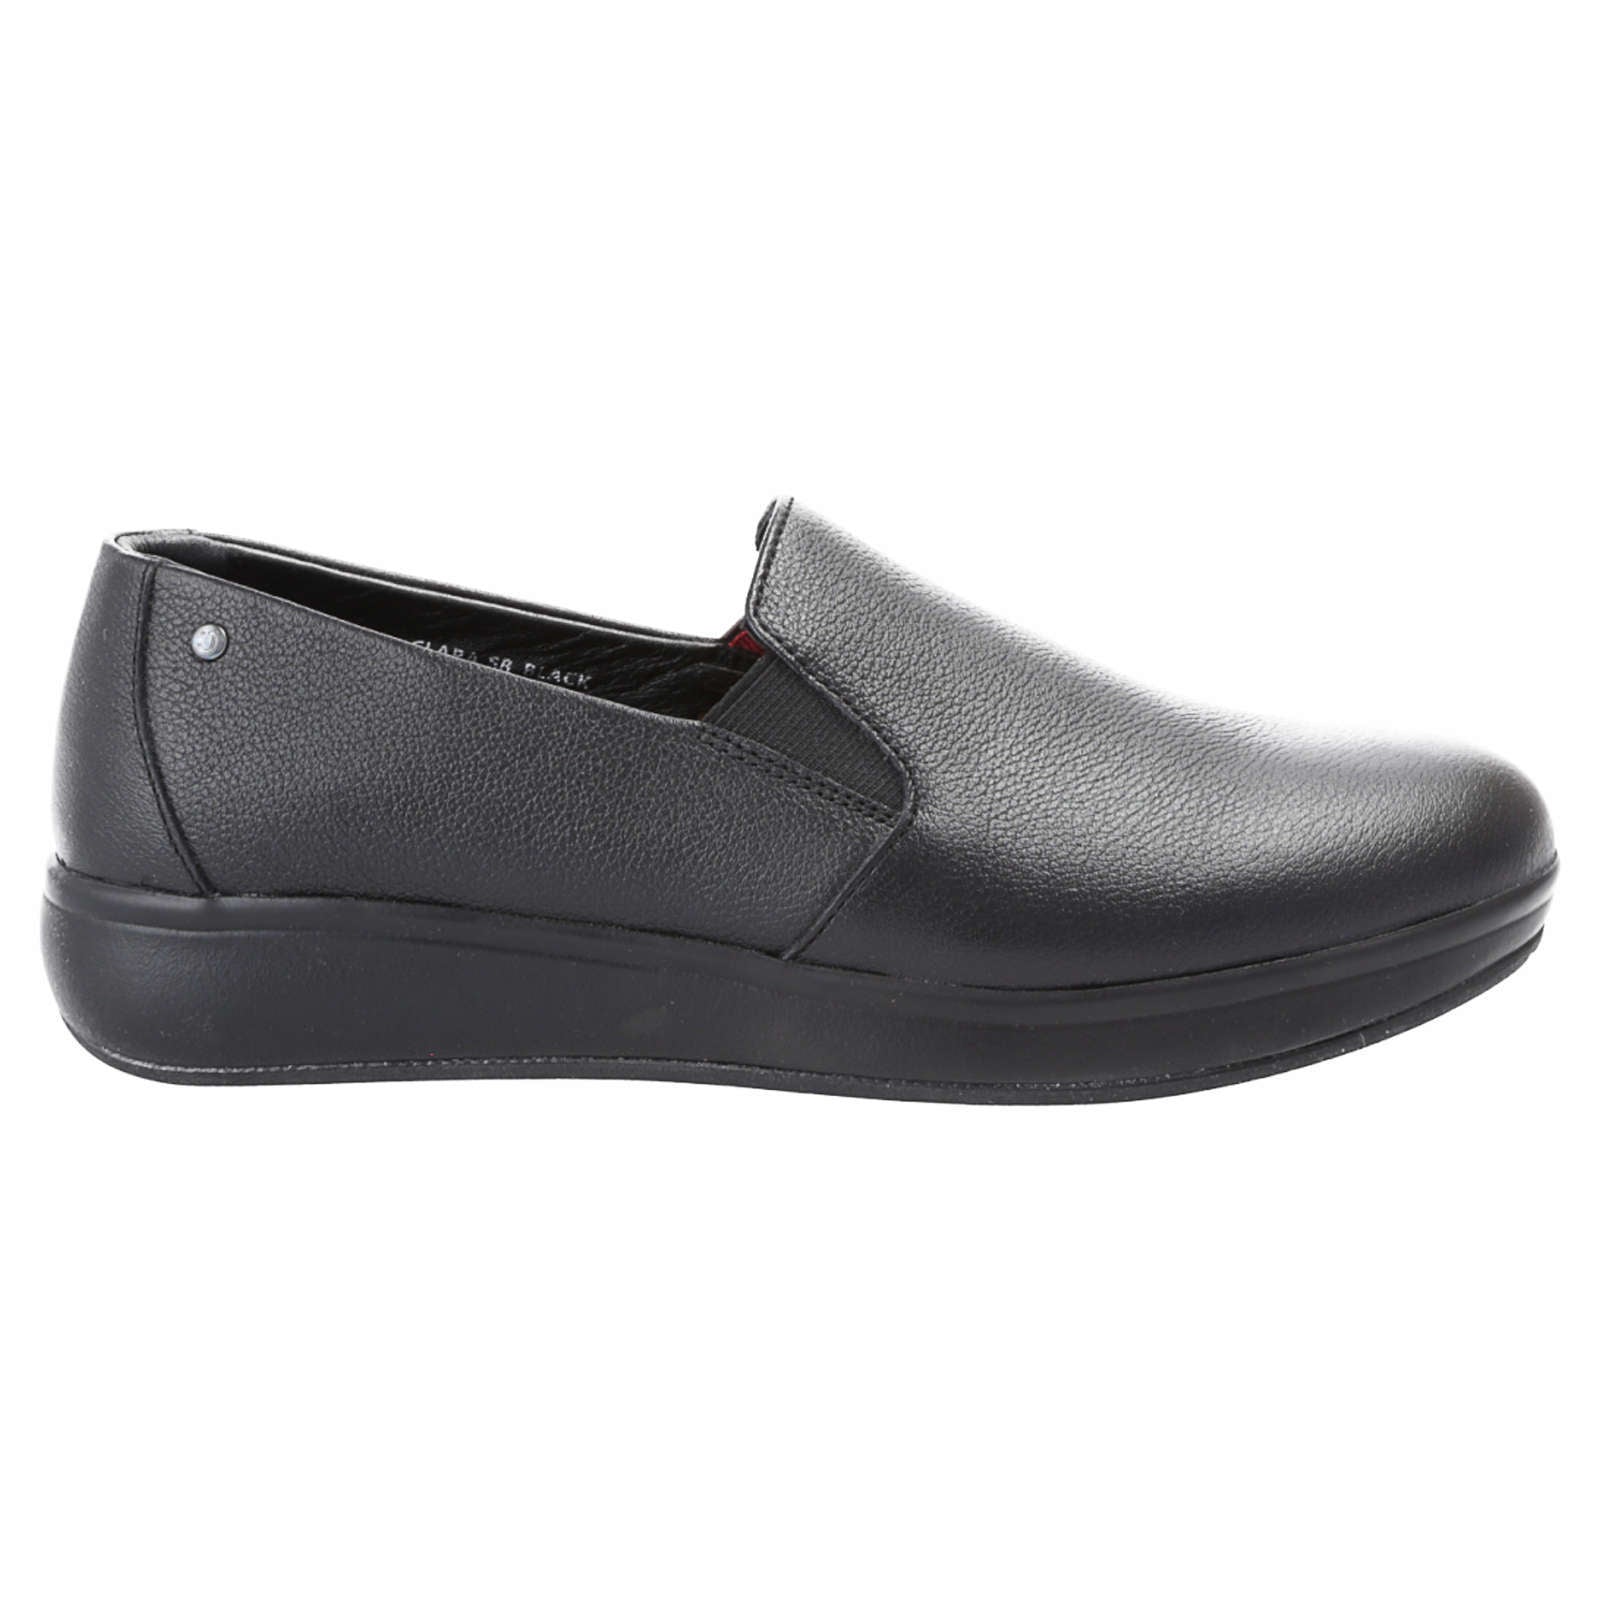 Joya Clara SR Full Grain Leather Women's Slip-On Shoes#color_black